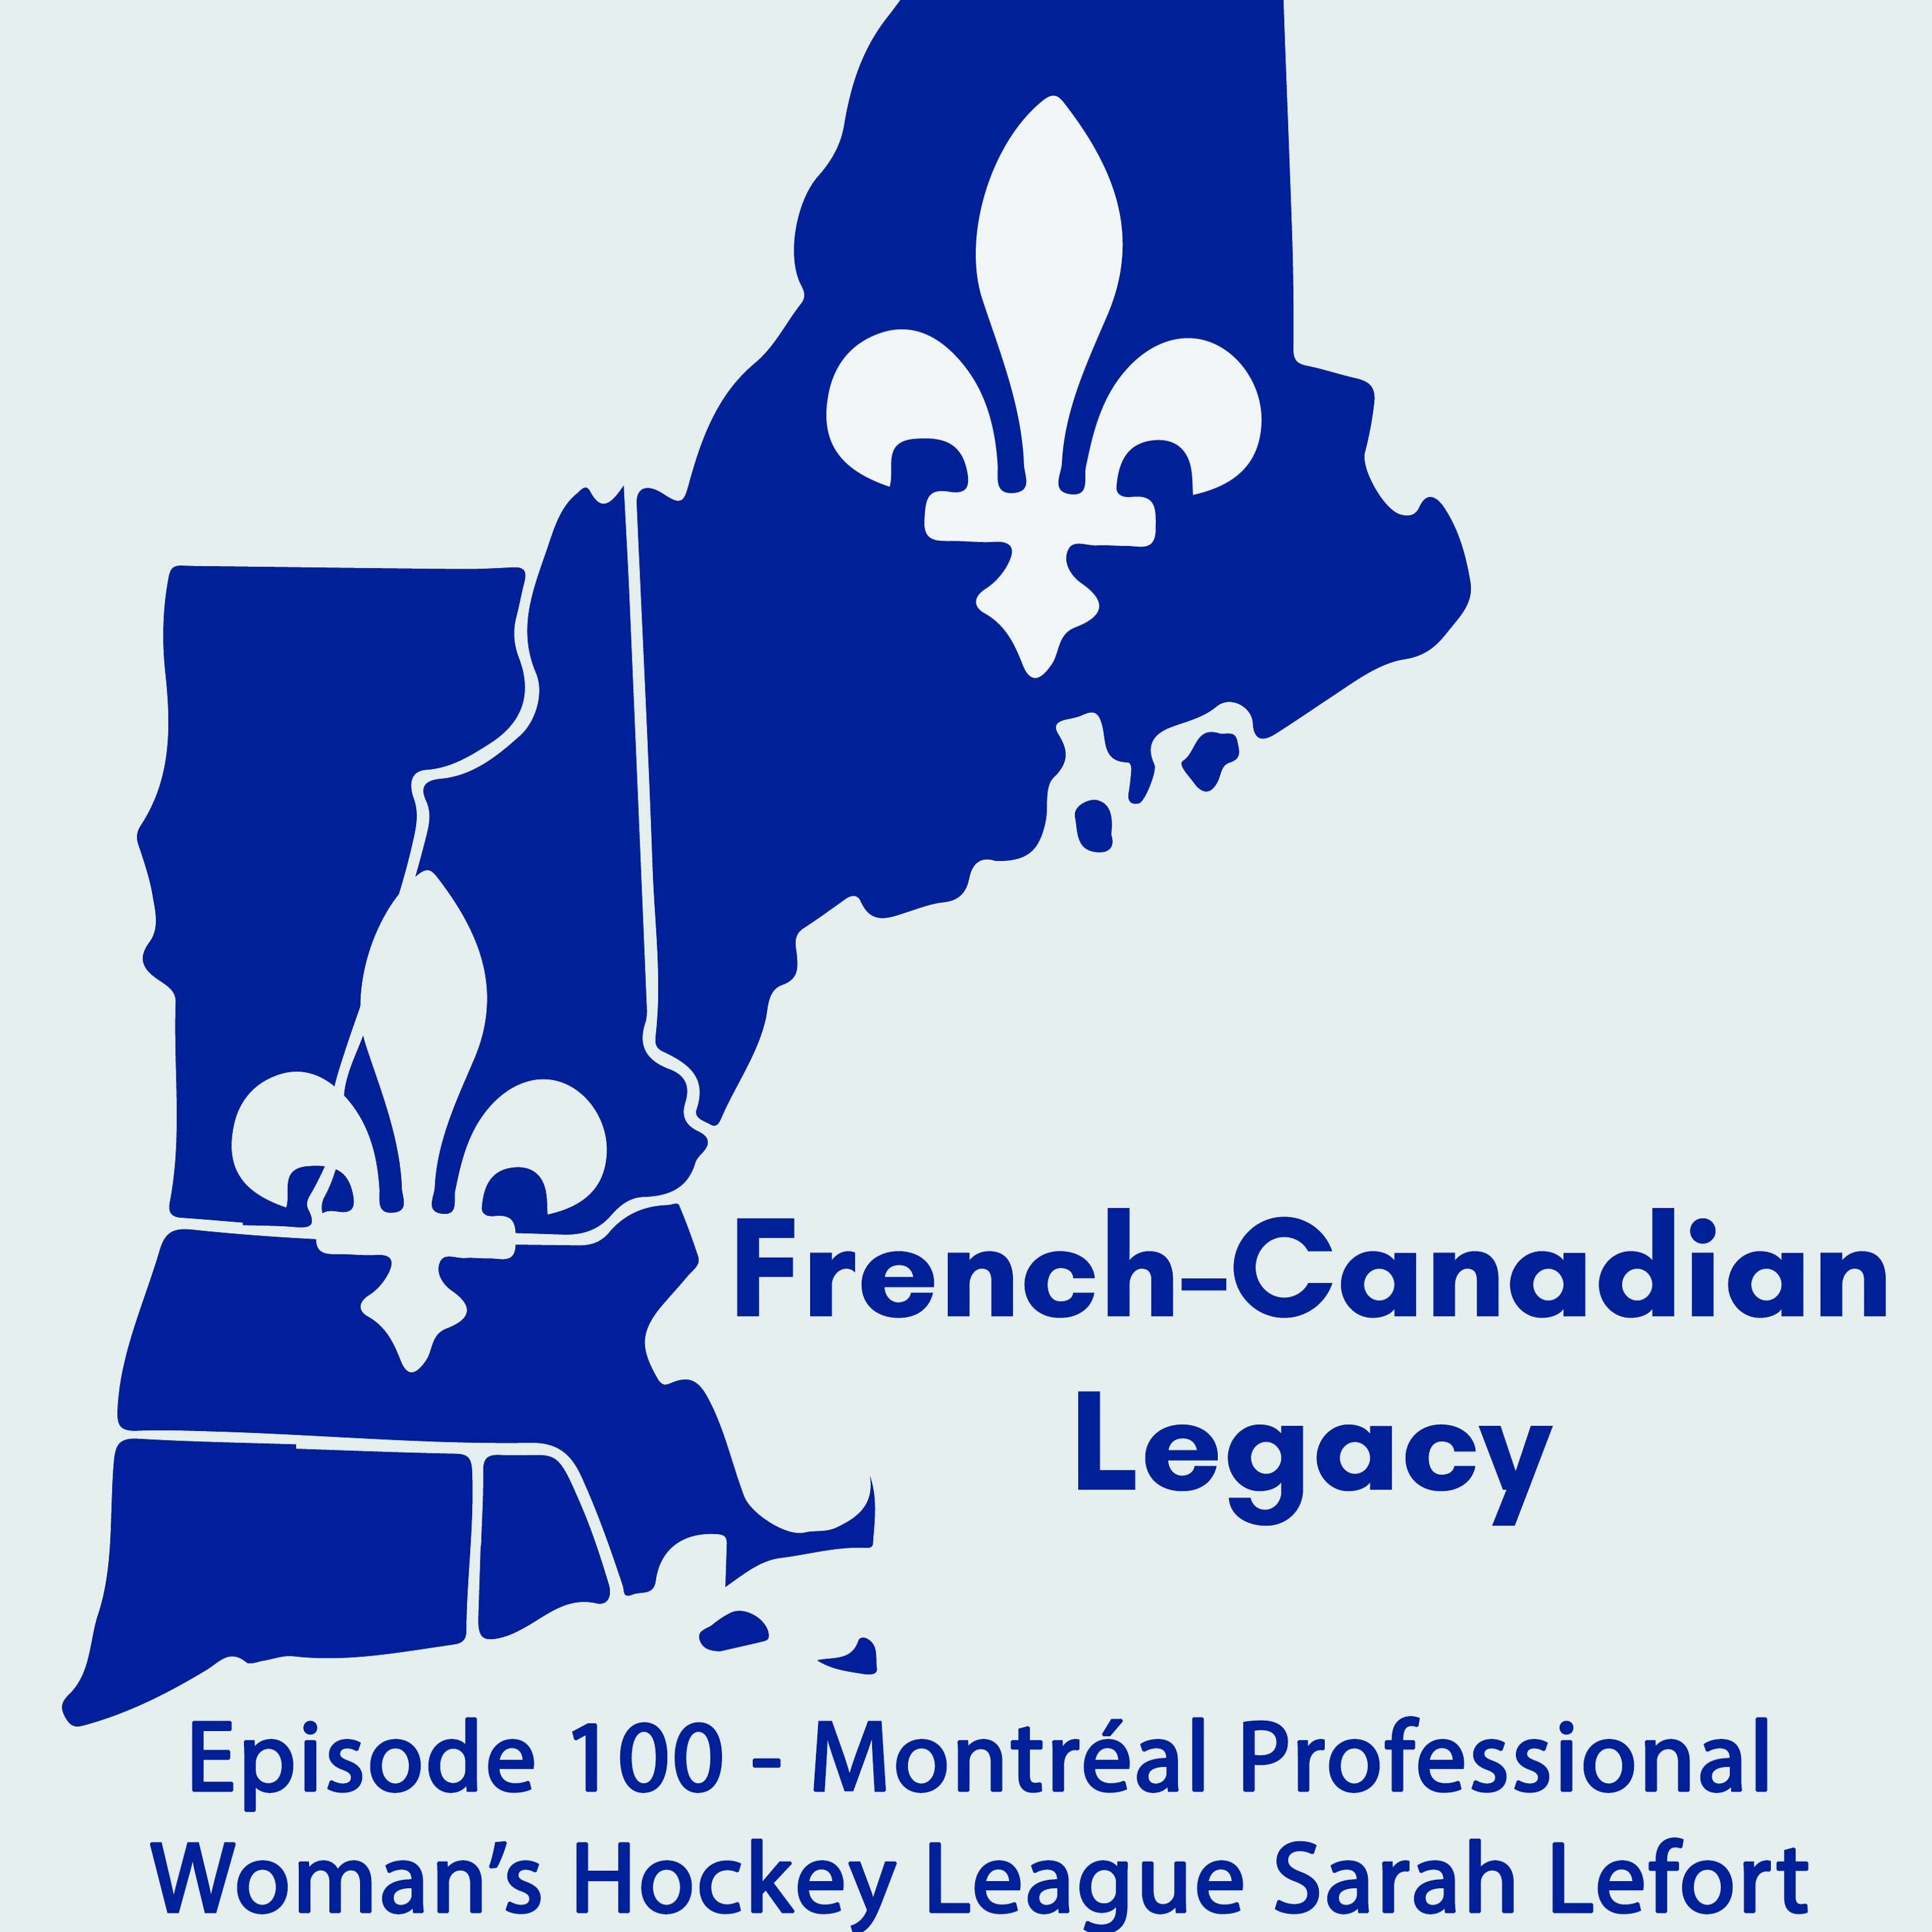 Episode 100 - Montréal Professional Women's Hockey League Sarah Lefort